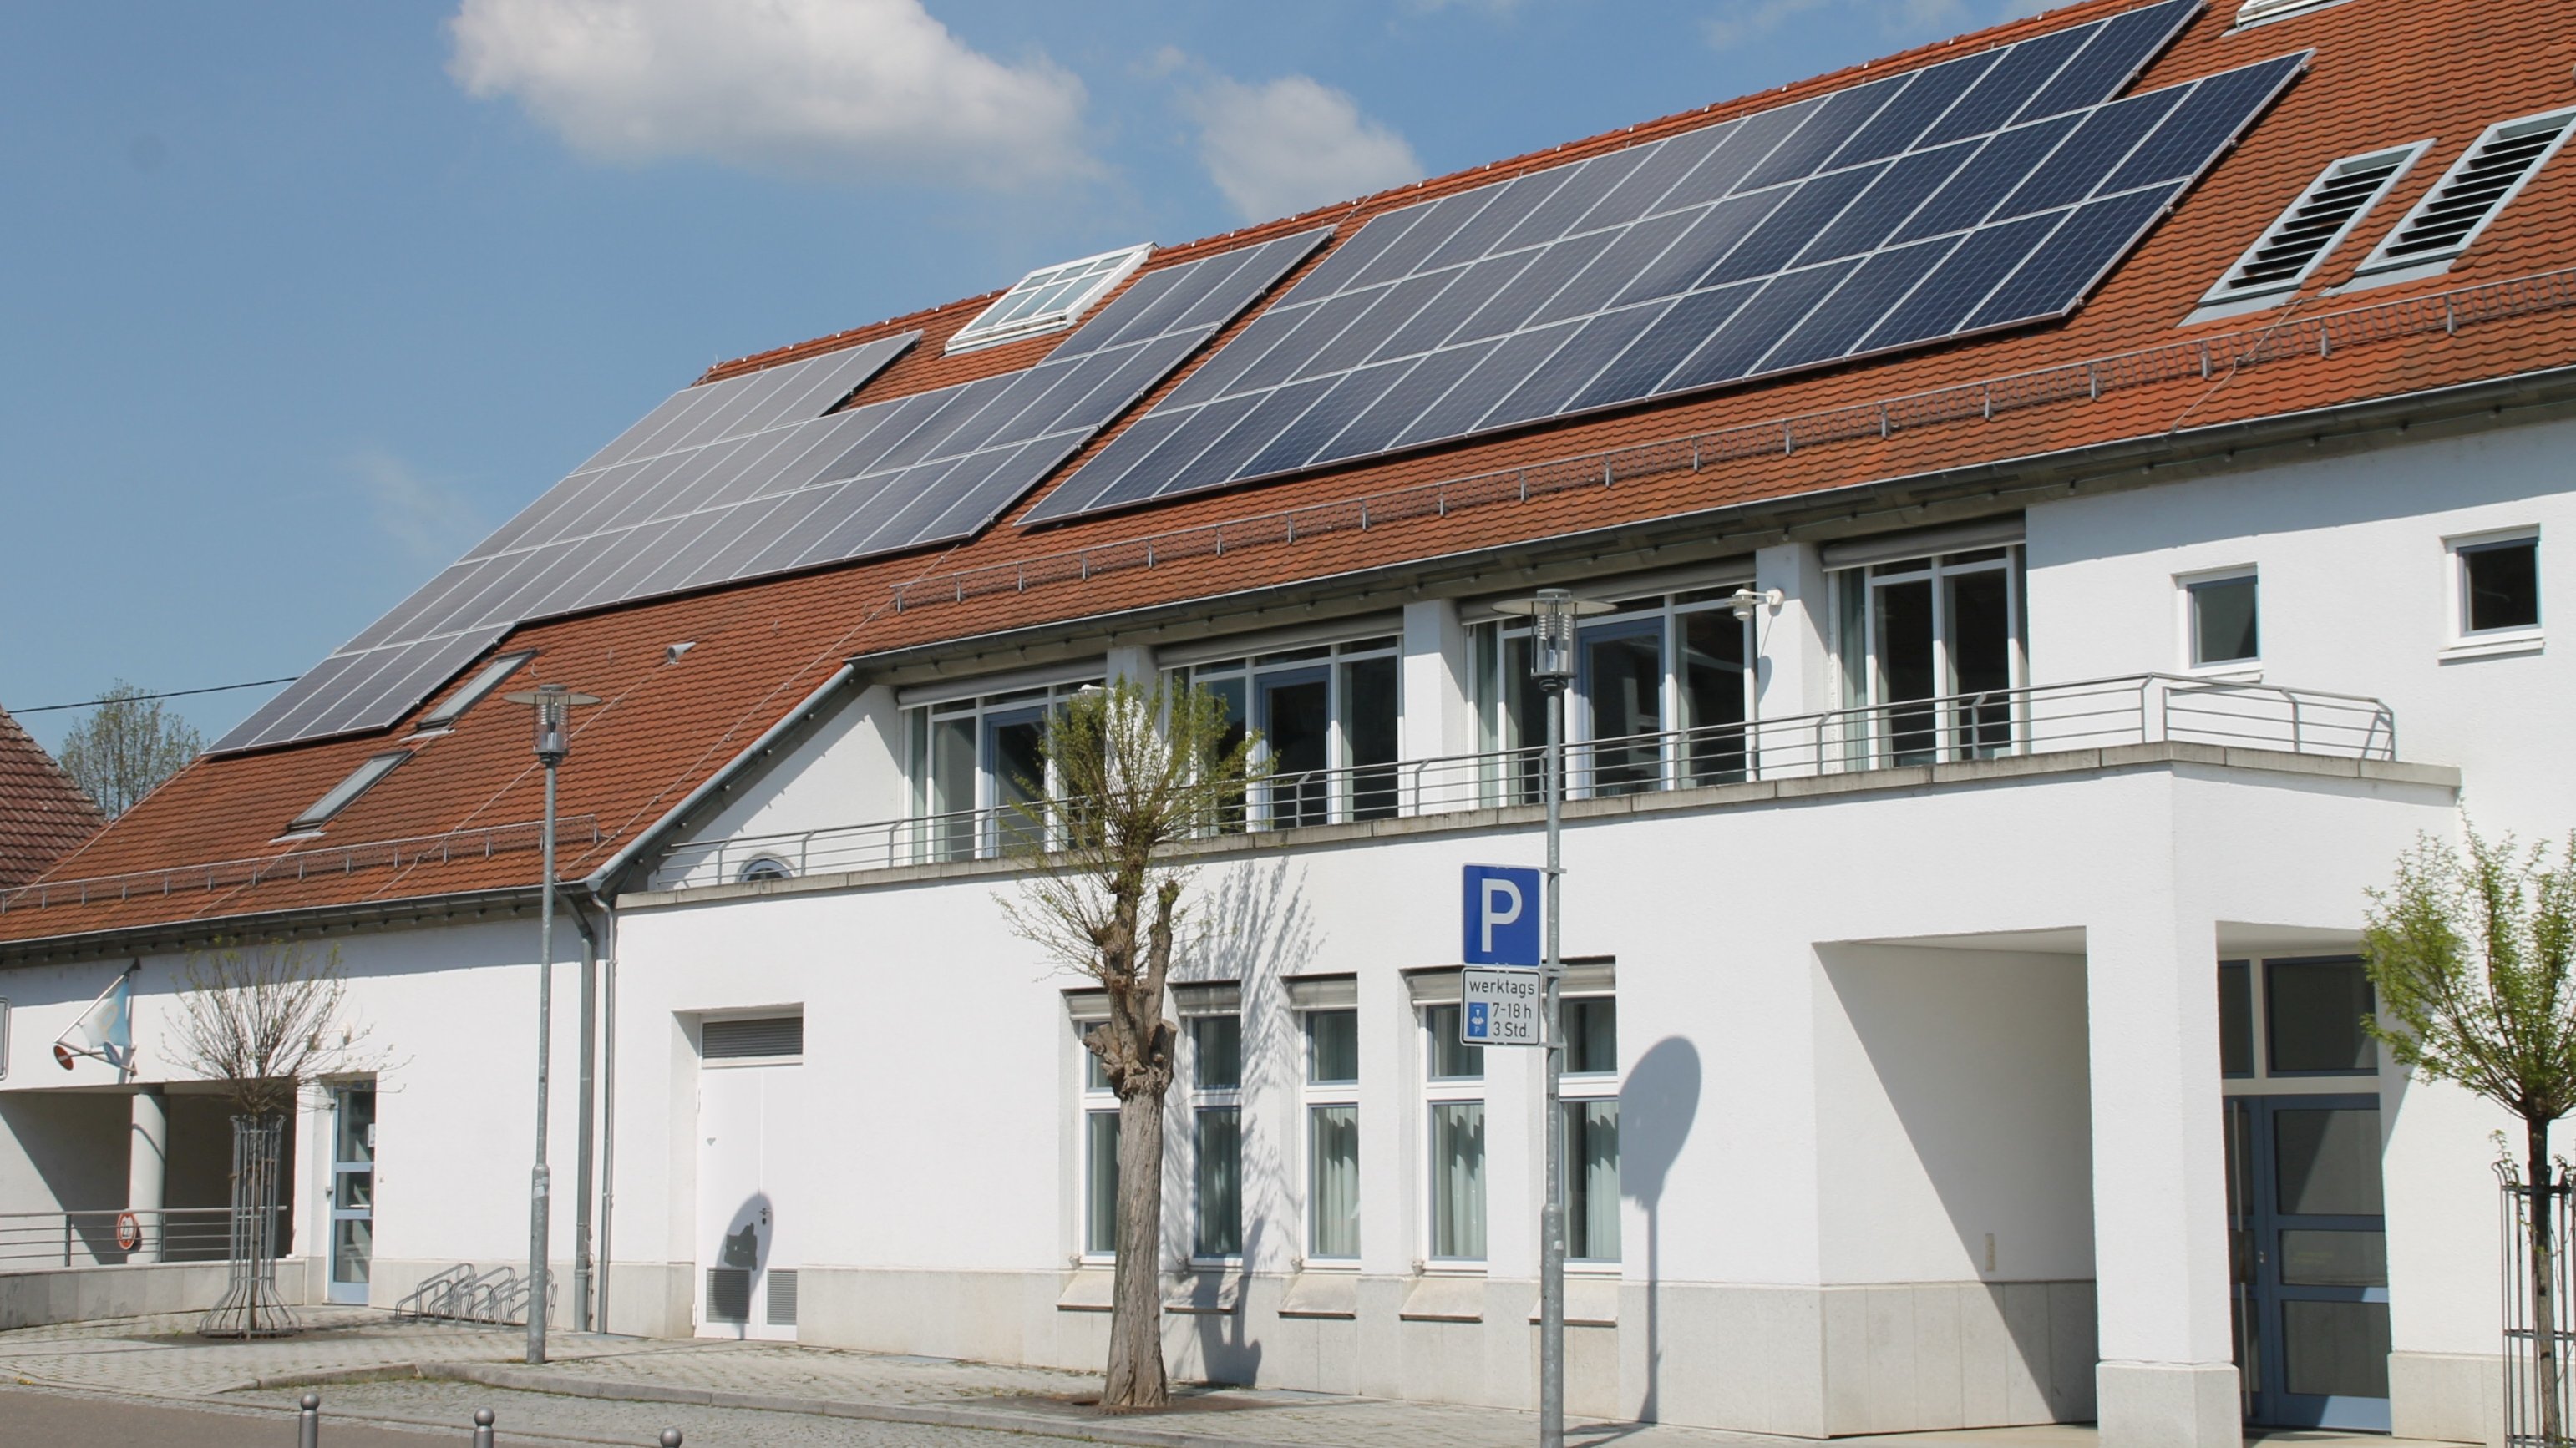 Auf dem Dach des Bürger- und Rathauses befindet sich nun eine Photovoltaikanlage